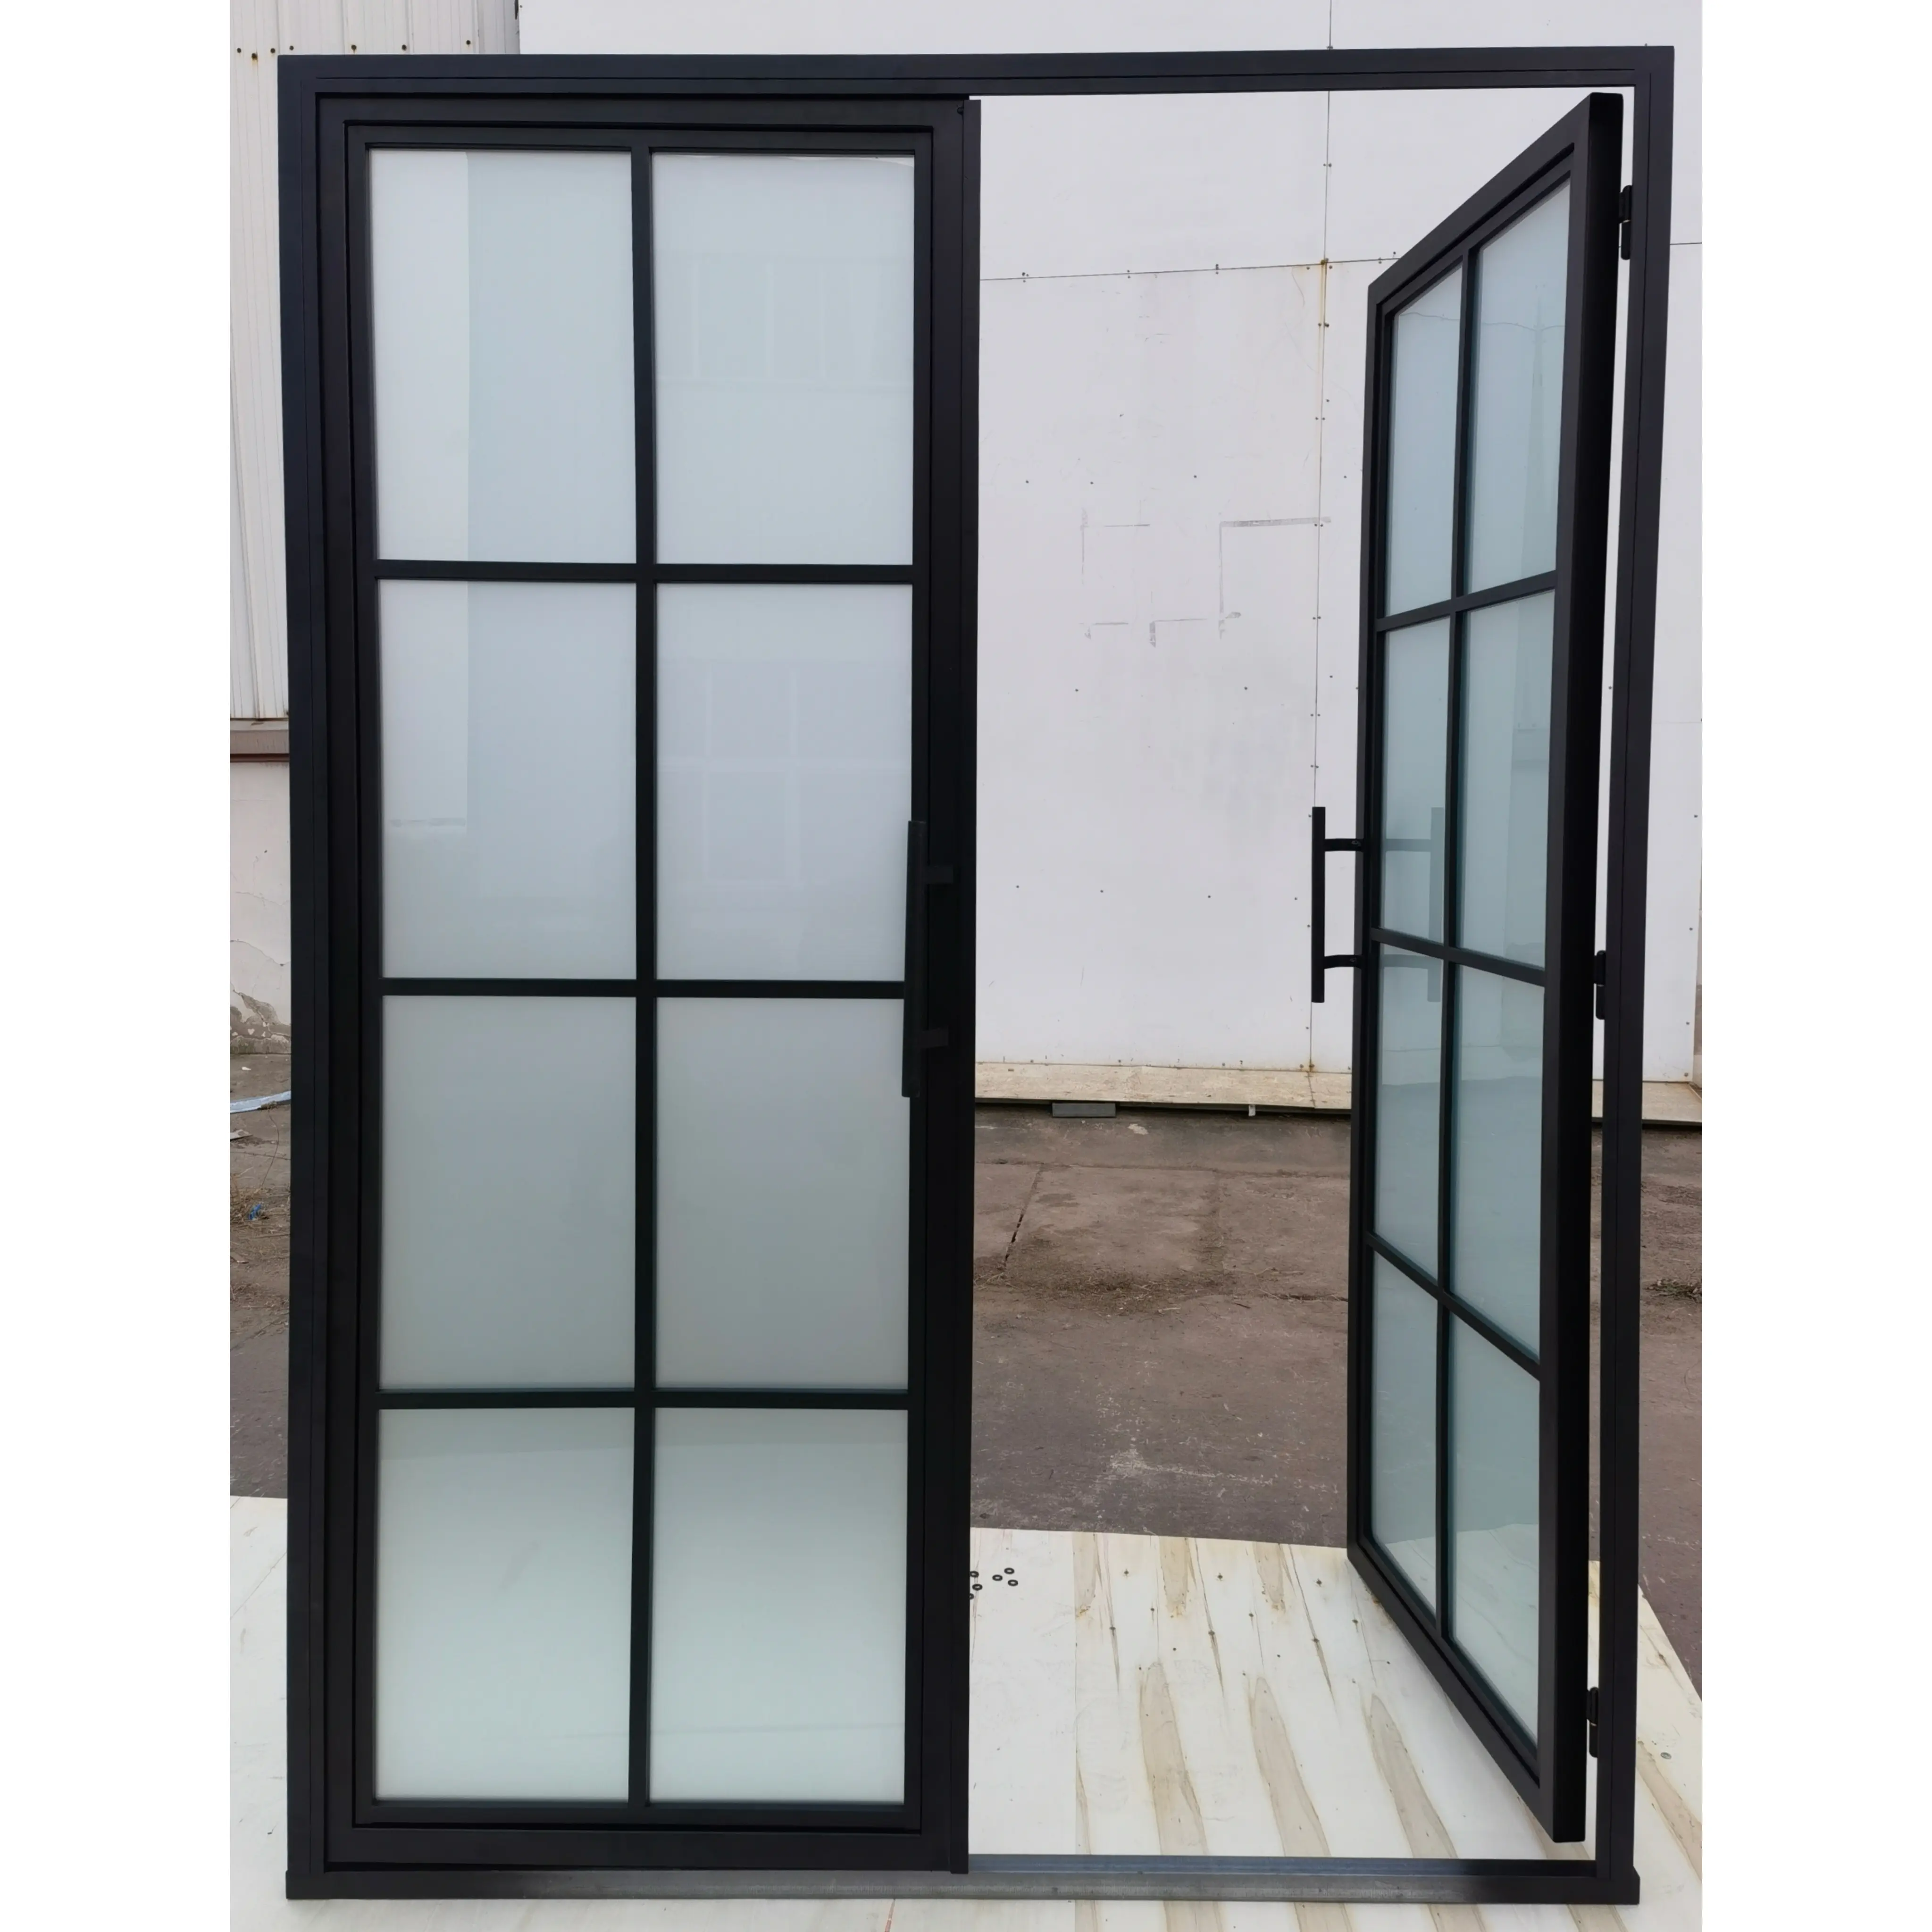 Bingkai baja berkualitas tinggi gaya Perancis pintu kaca ganda dengan desain kisi untuk penggunaan Interior